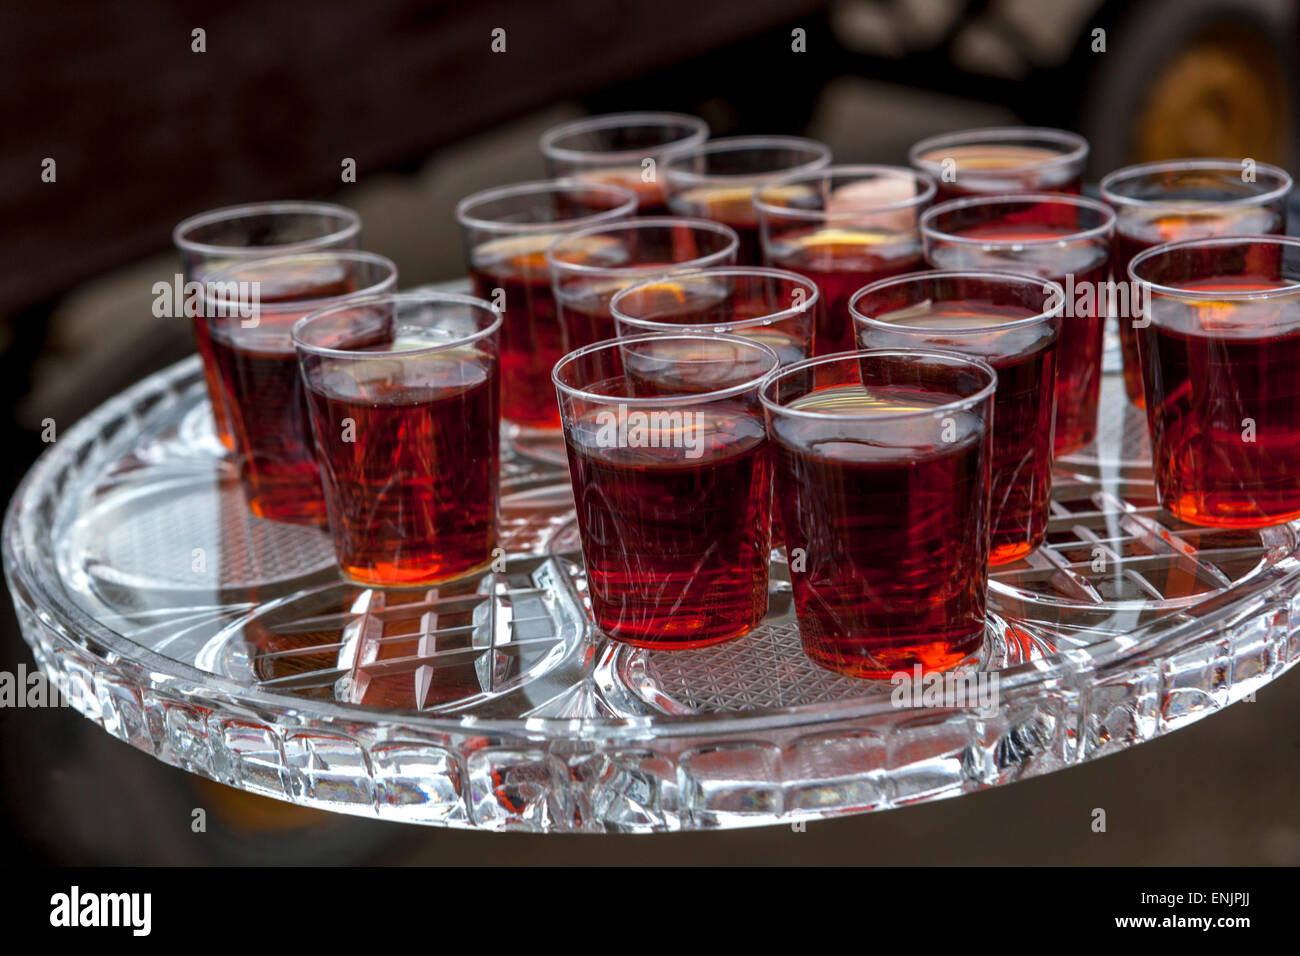 Alcohol shots on tray Drinking shots Stock Photo